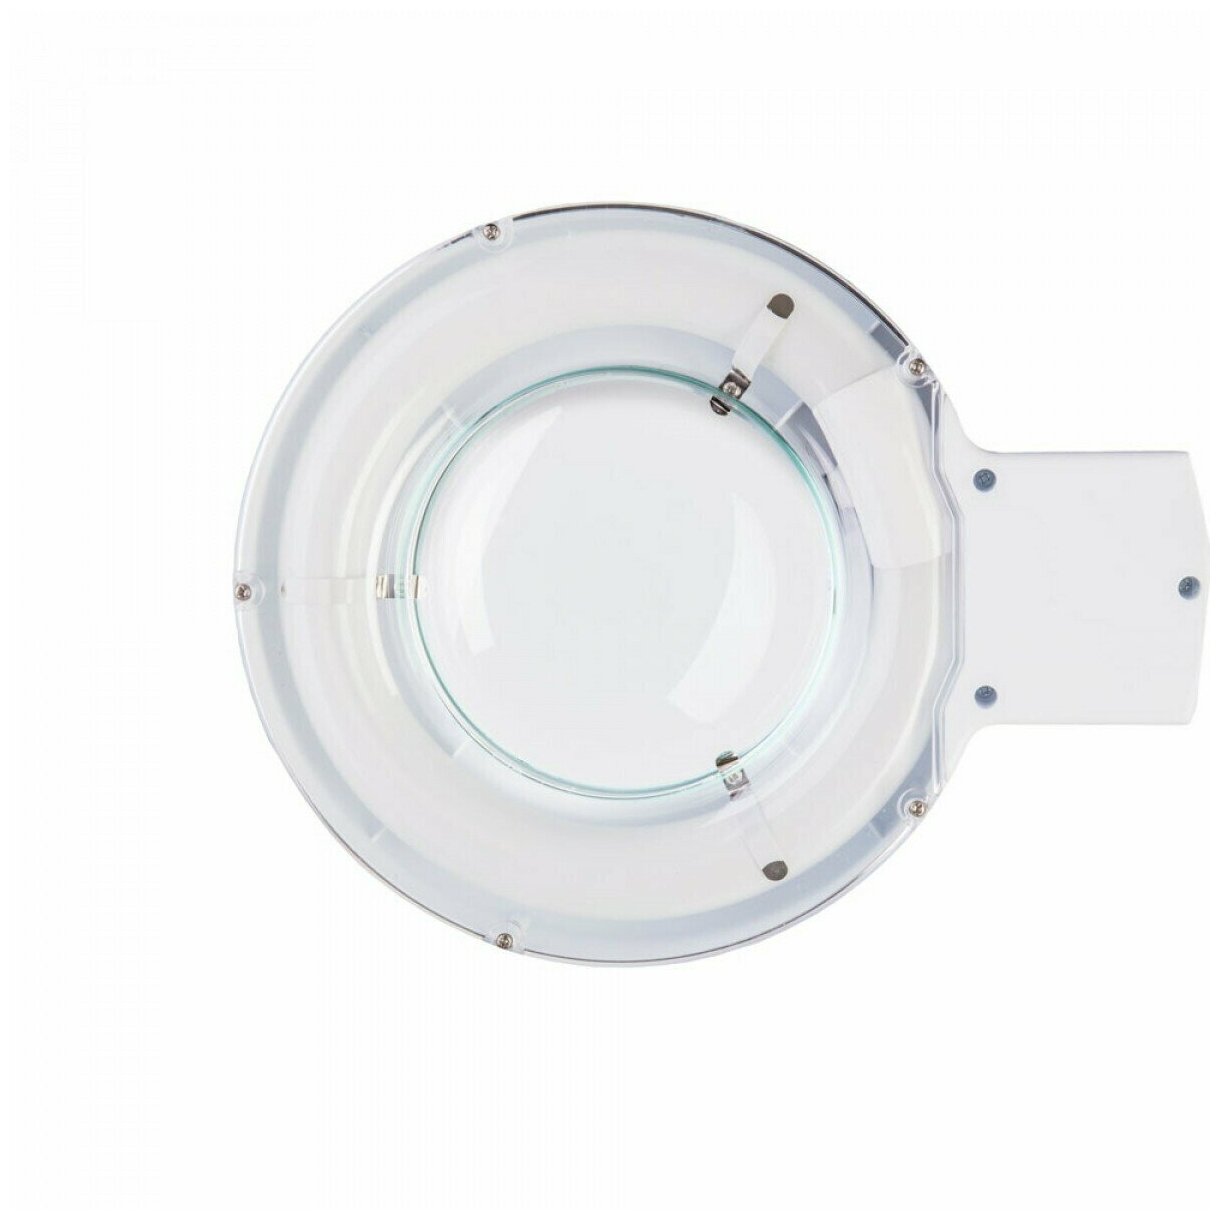 Настольная лампа-лупа с подсветкой Veber 8608D 5D, 5дптр, 120 мм